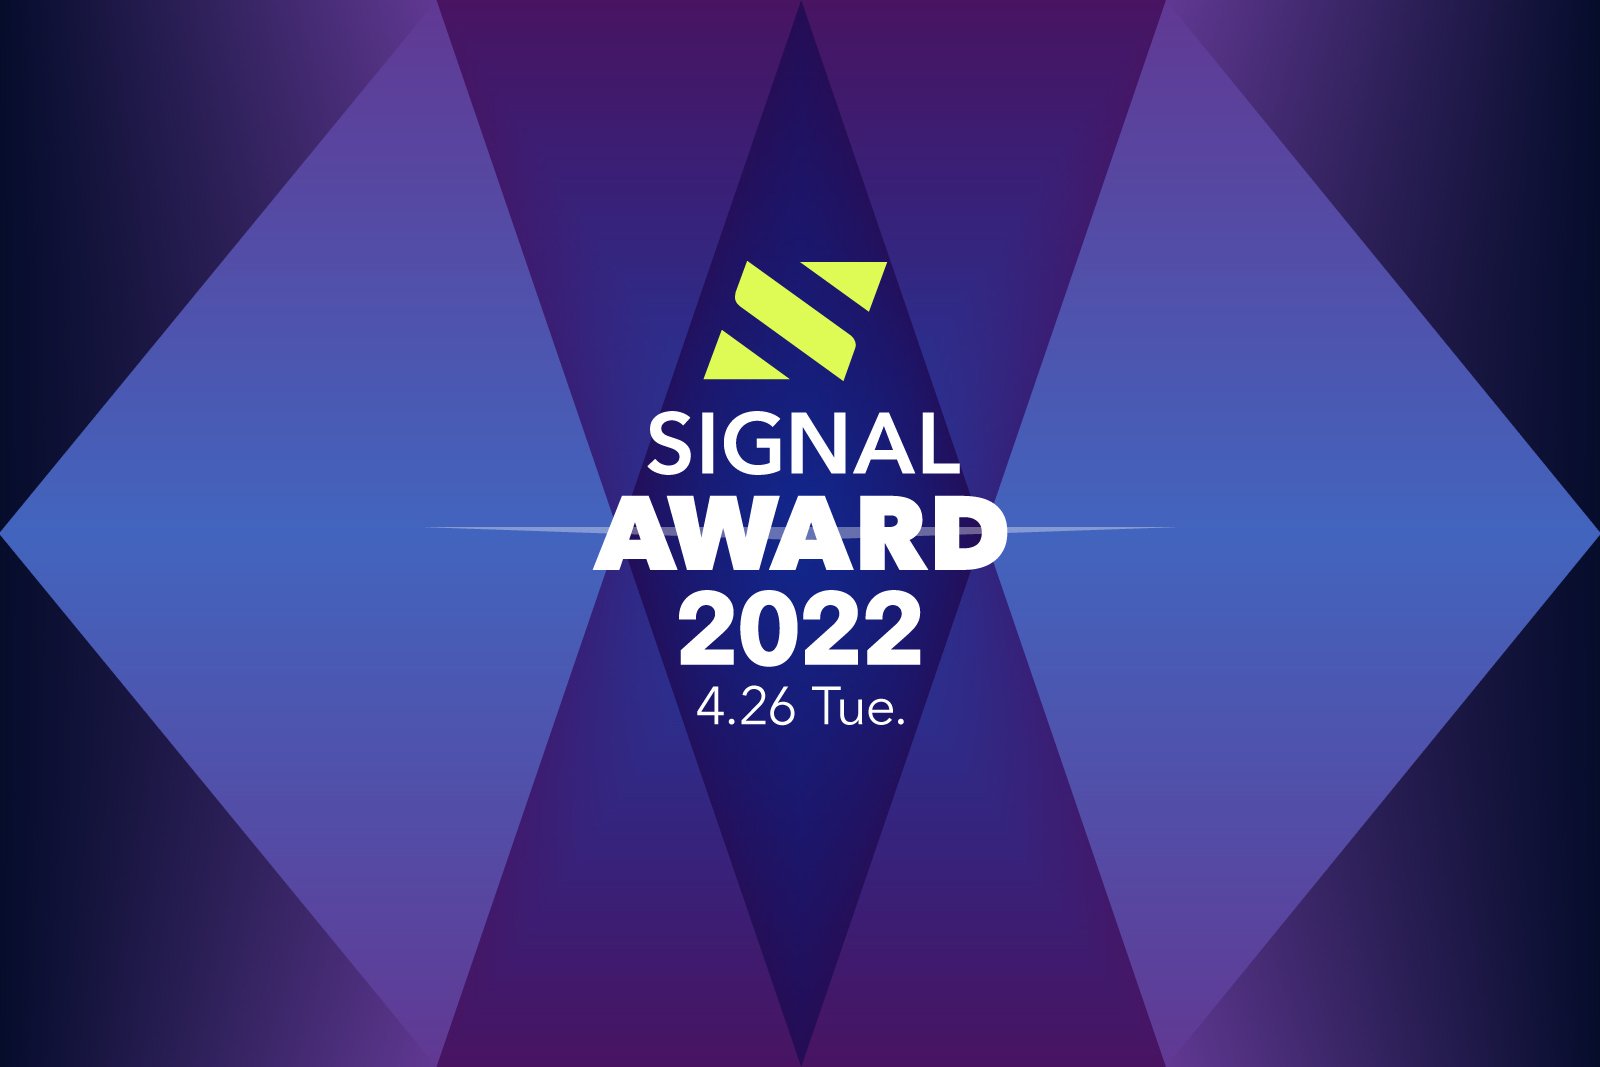 120社以上の応募が集まった「SIGNAL AWARD 2022」、最終審査に進む20社が決定